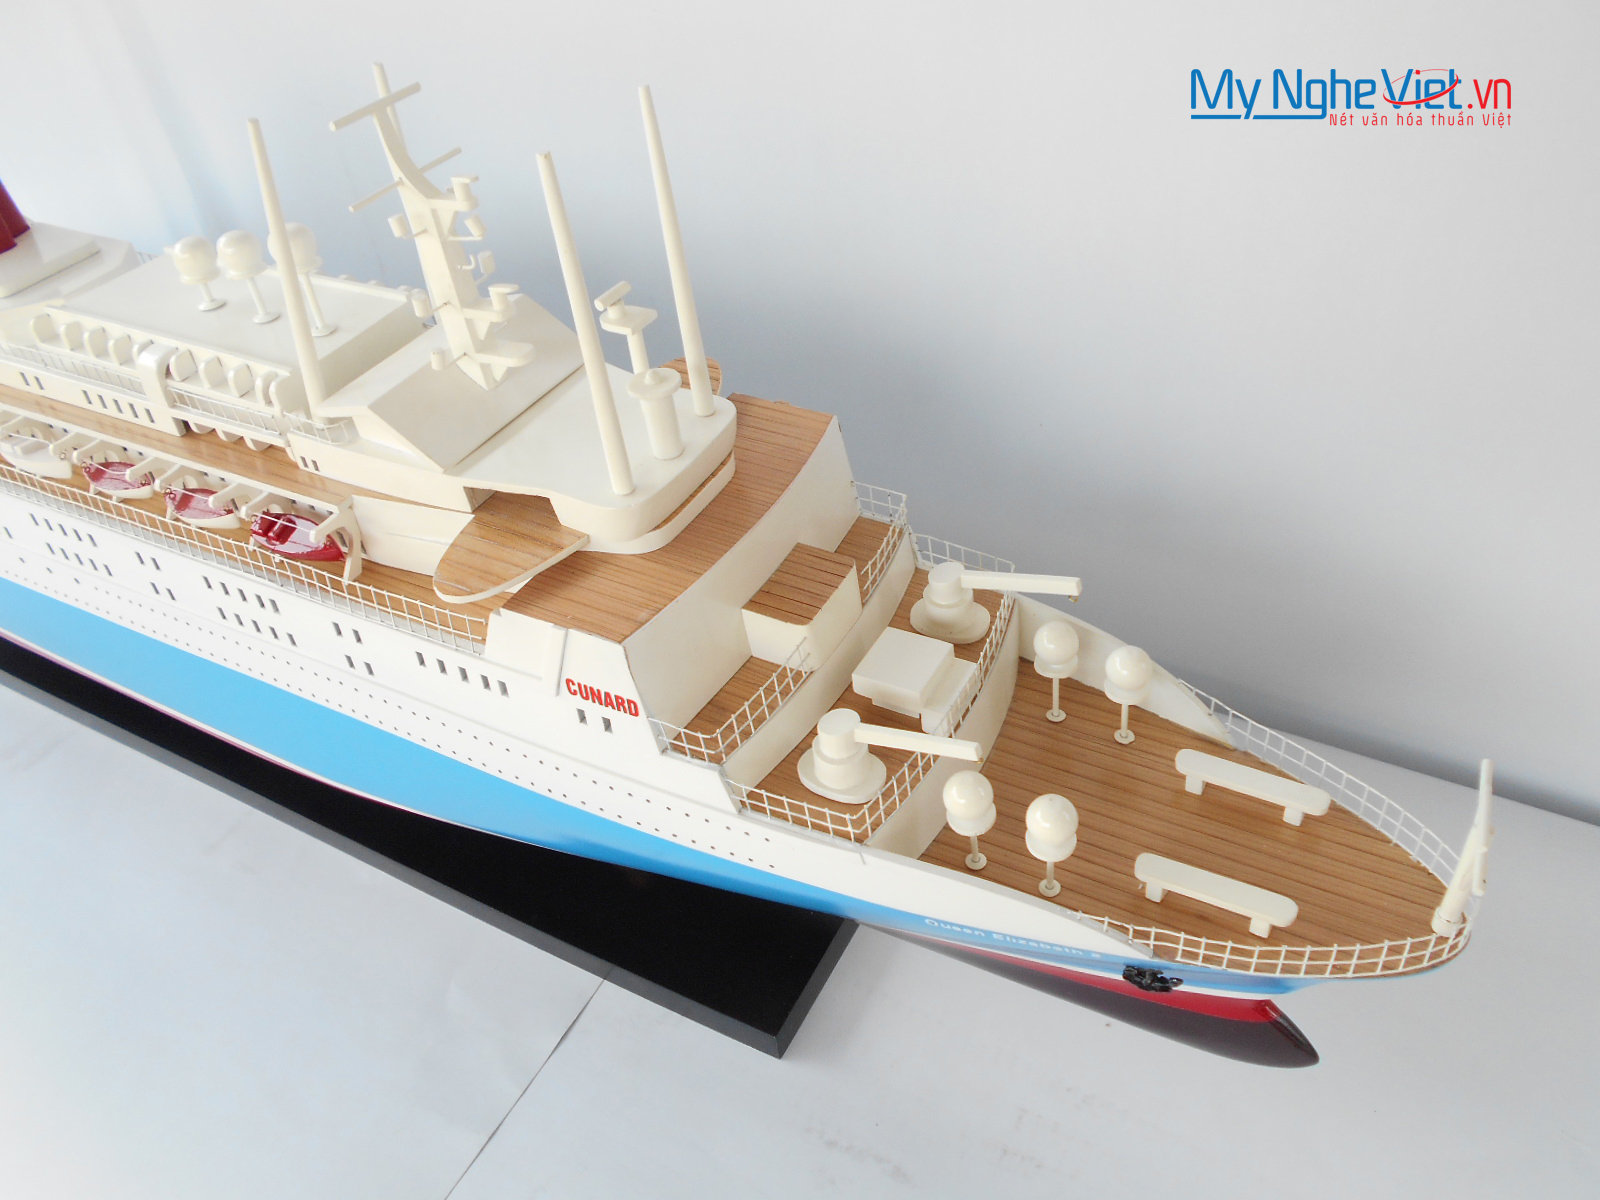 Mô hình du thuyền Queen Elizabeth 2 (Màu sơn) - MNV-CSQELI2-100P (đặt hàng liên hệ)